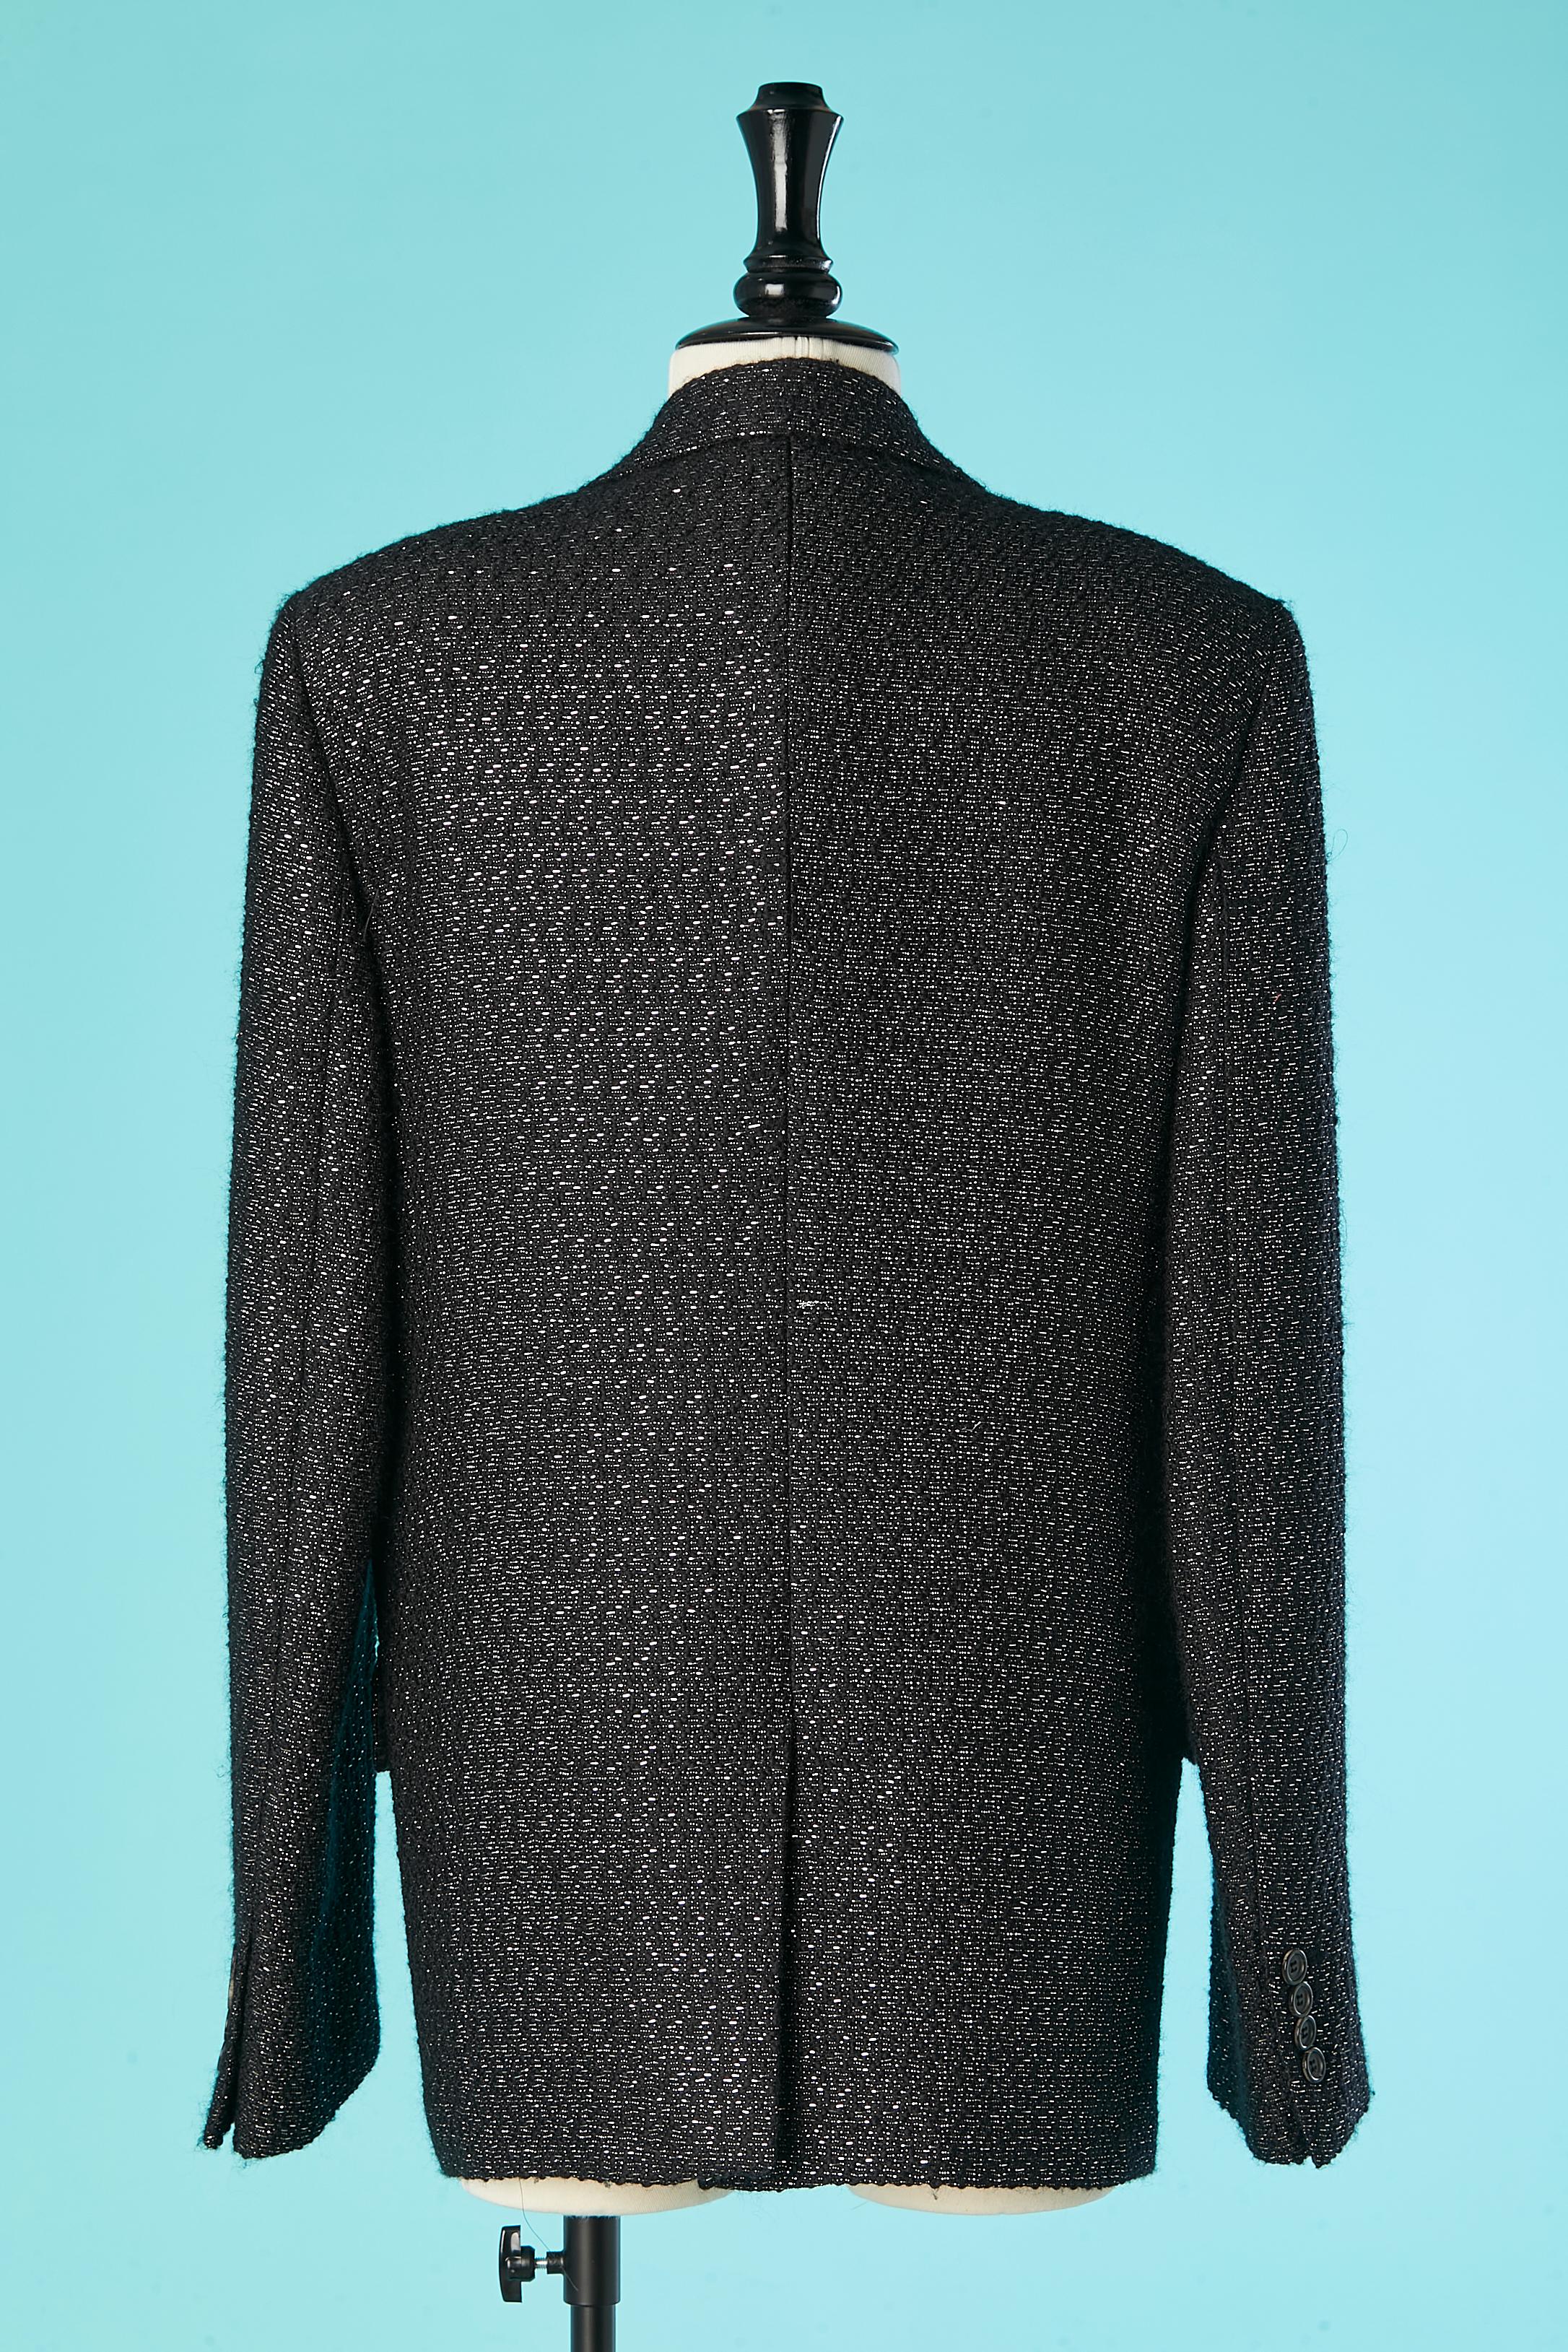 Blazer croisé en laine noire et lurex argenté Dior Homme by Hedi Slimane  en vente 1